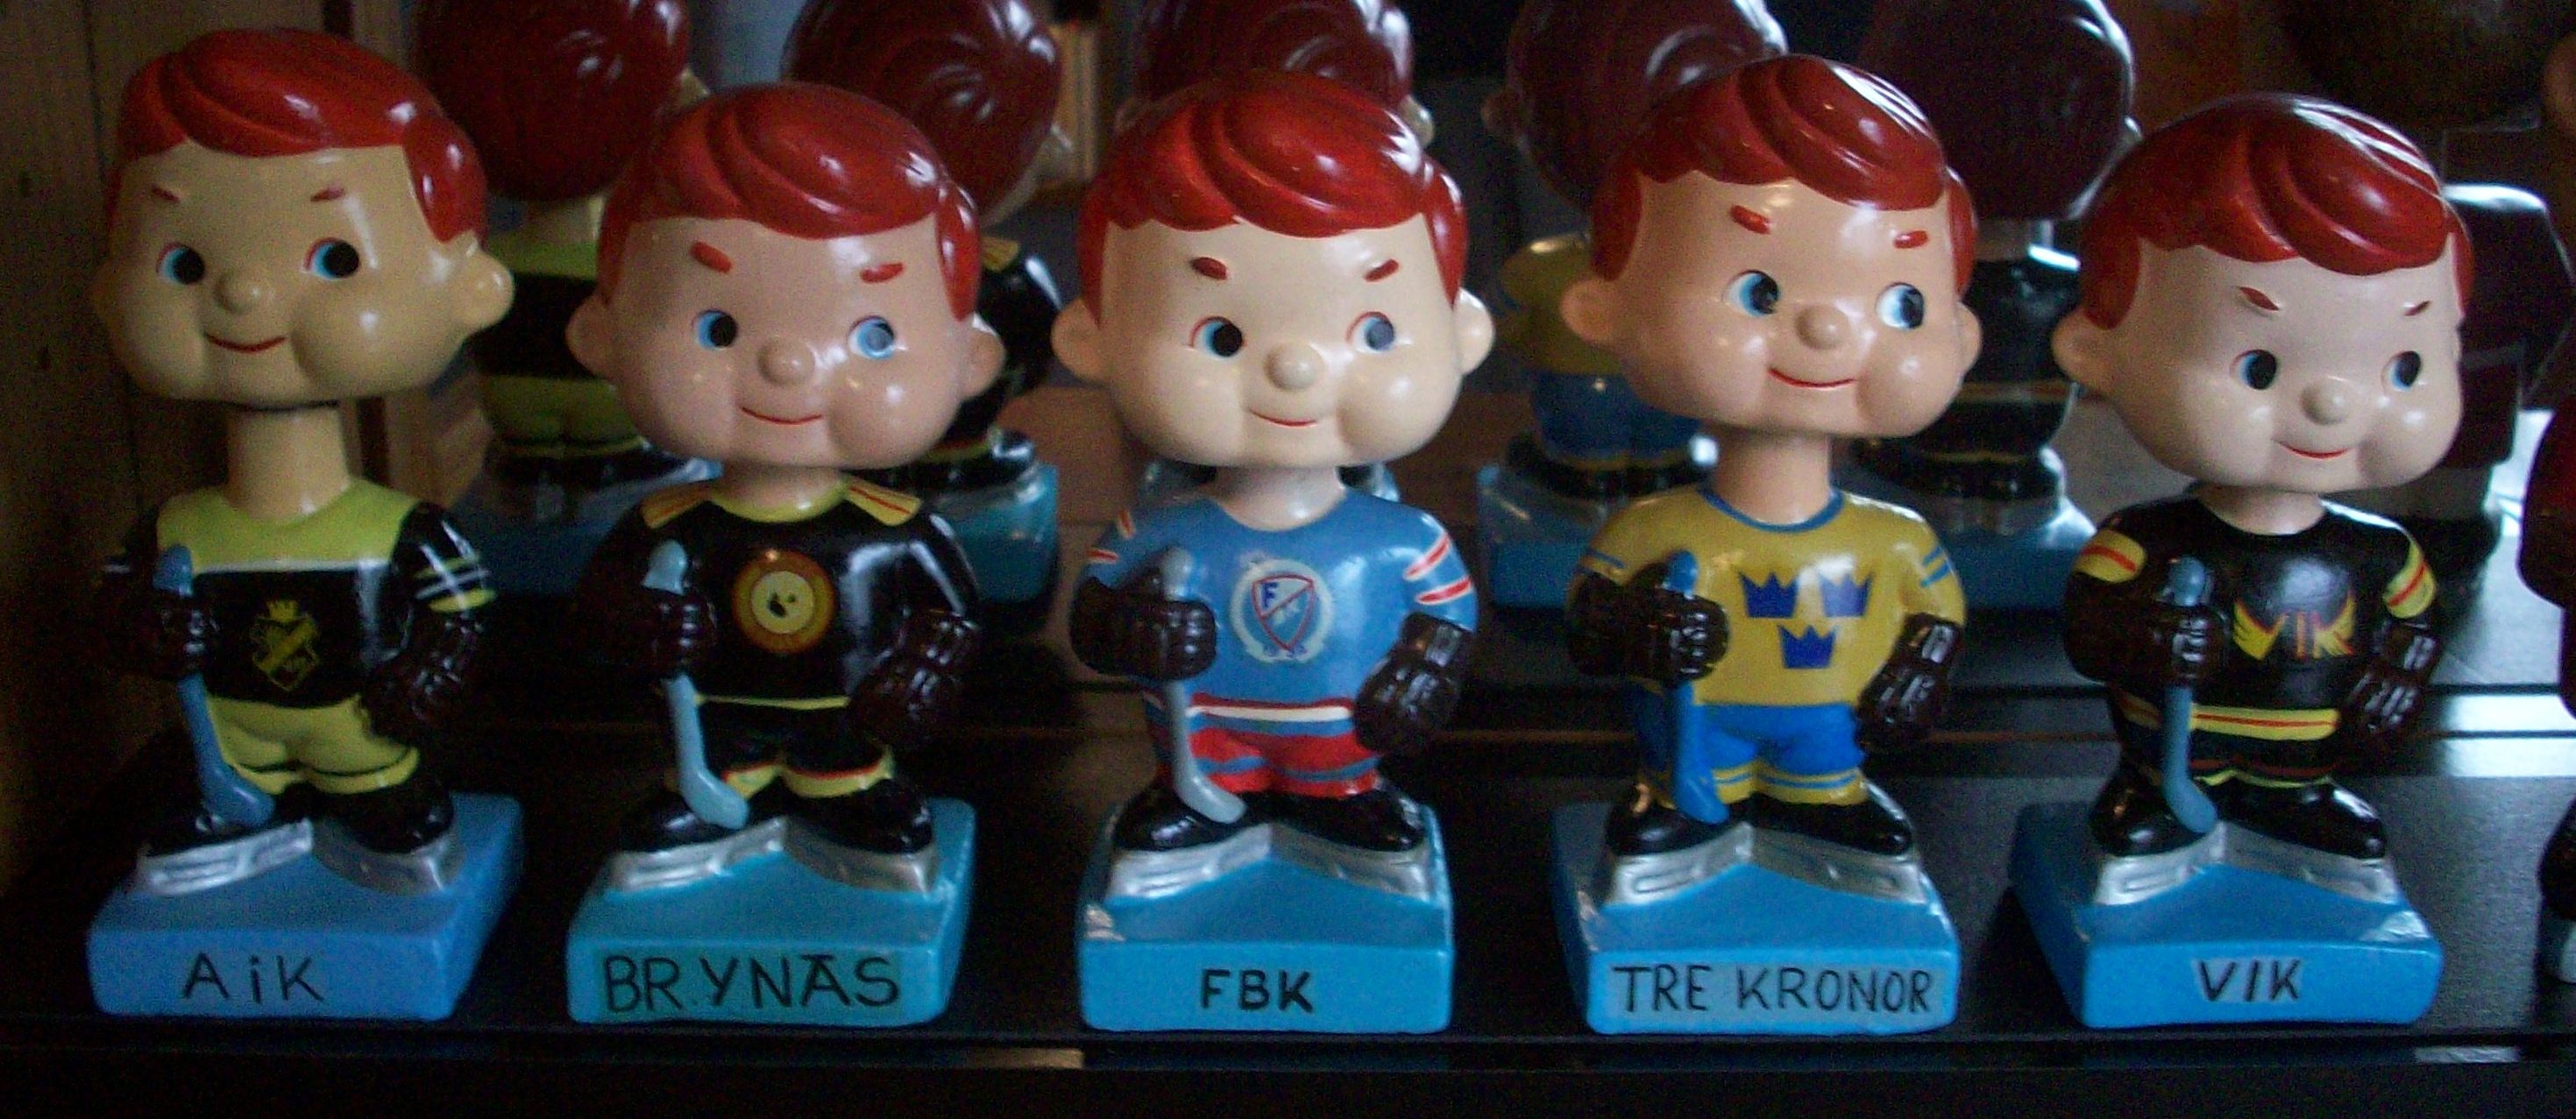 swedish dolls